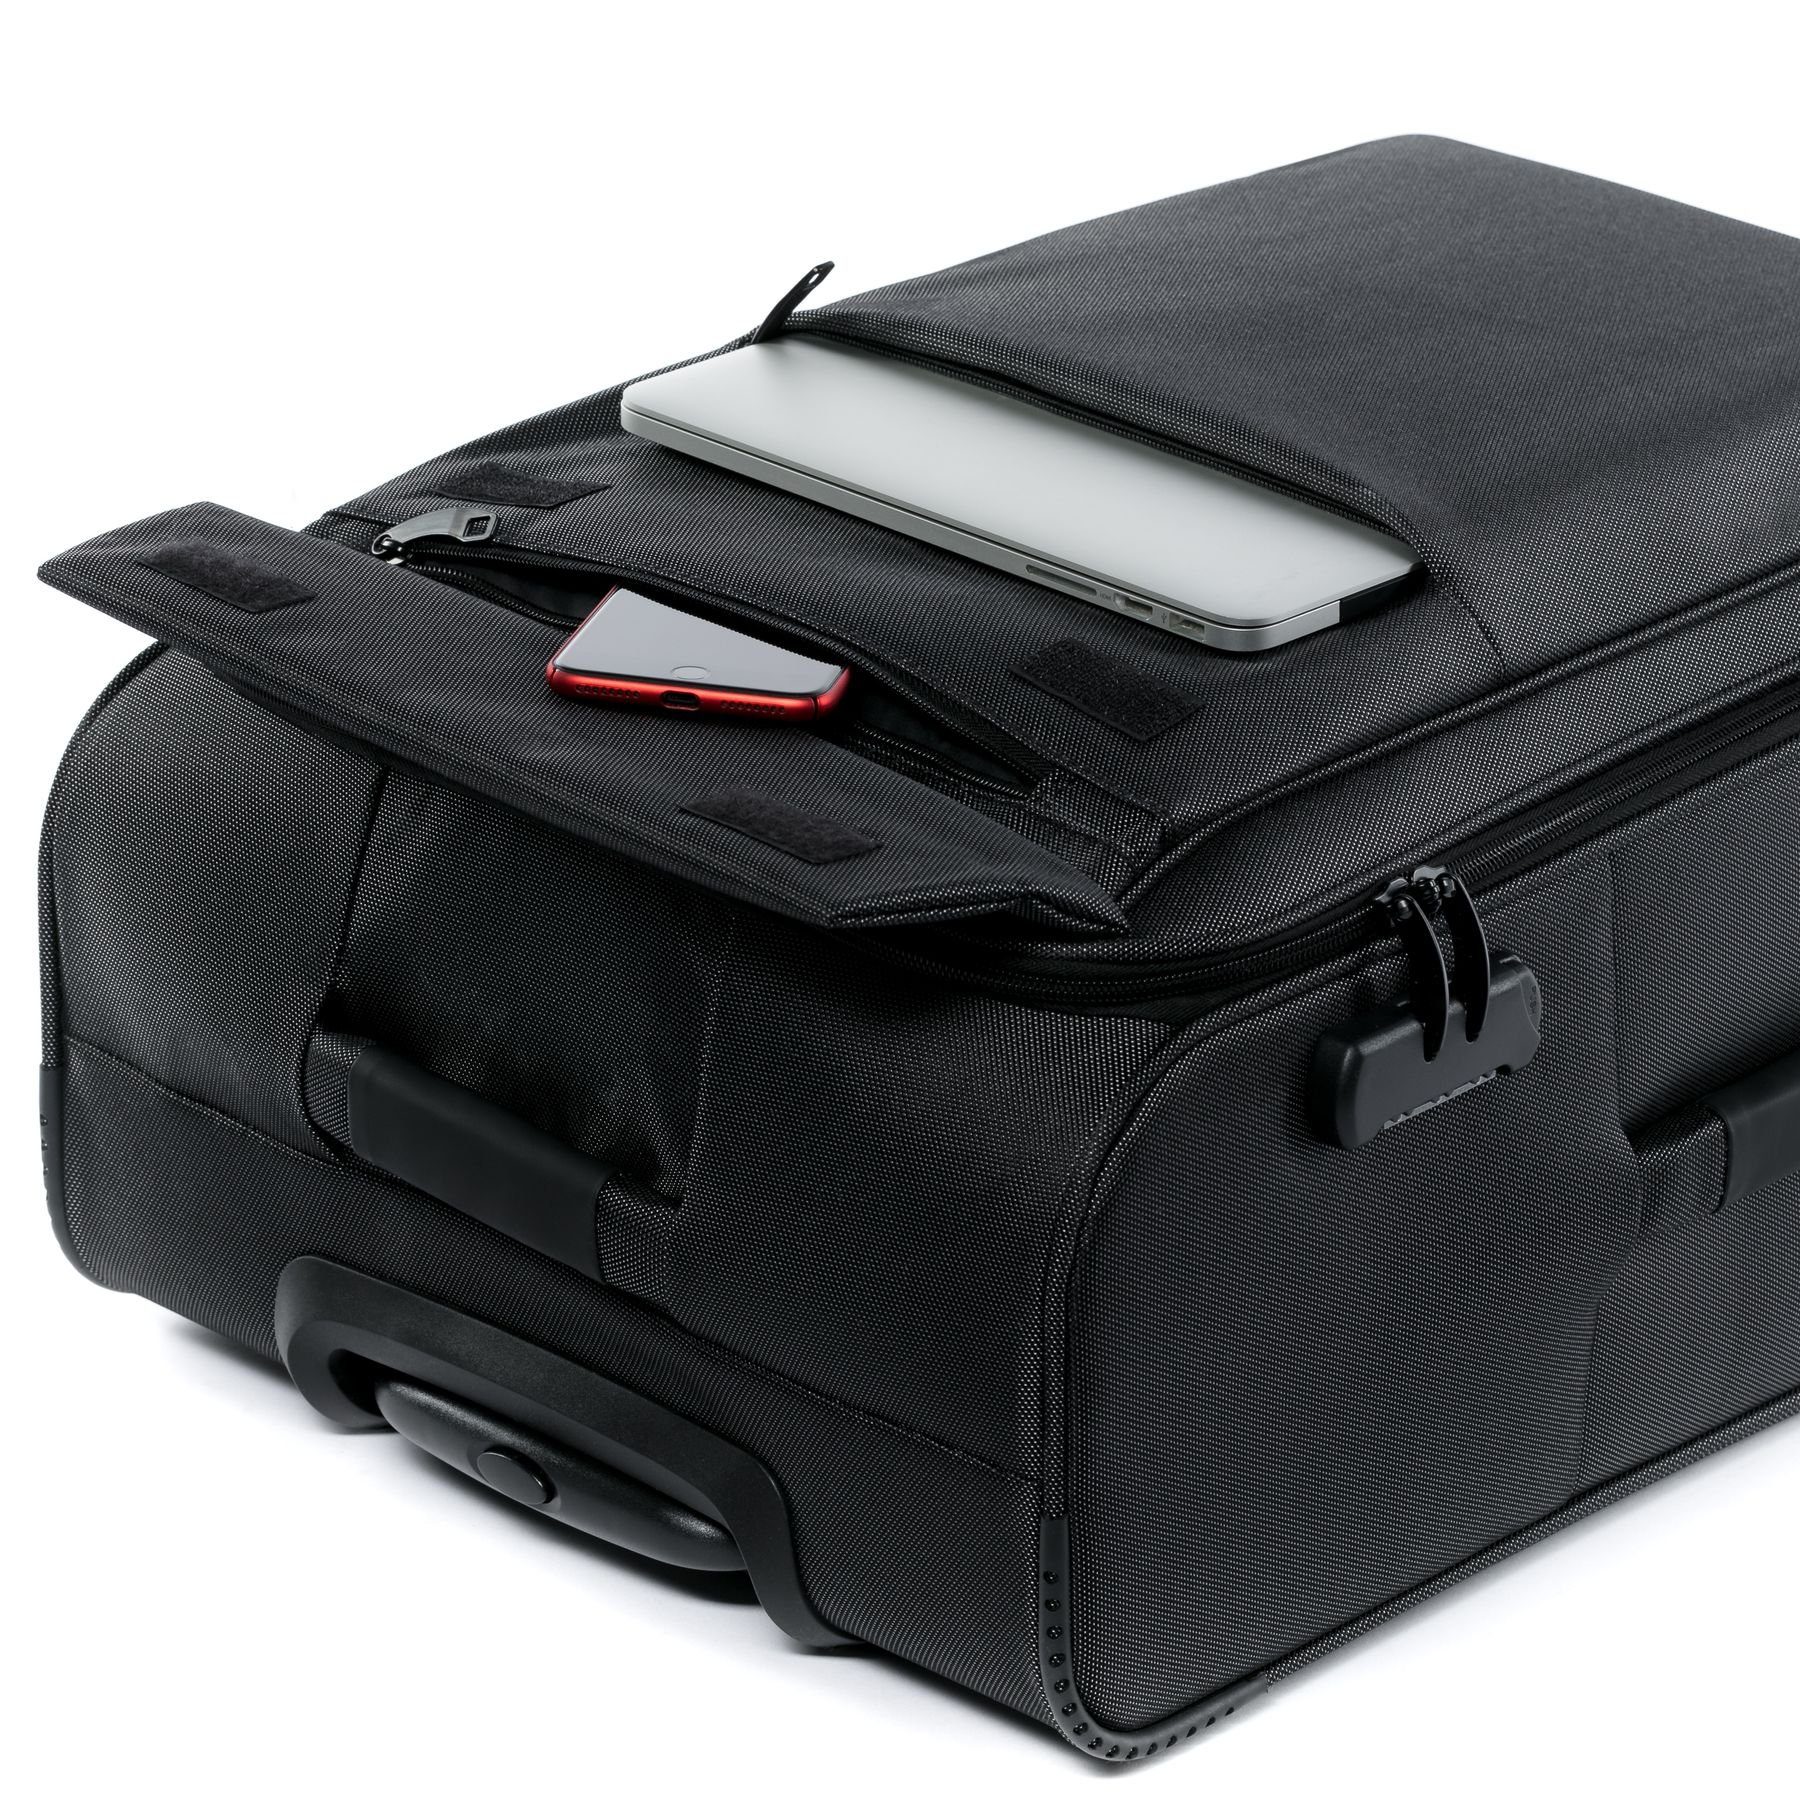 Koffer Premium Kofferset Rollkoffer 3er Calais, teilig 4 Weichschale Set, Trolley FERGÉ Rollen, 3 Reisekoffer